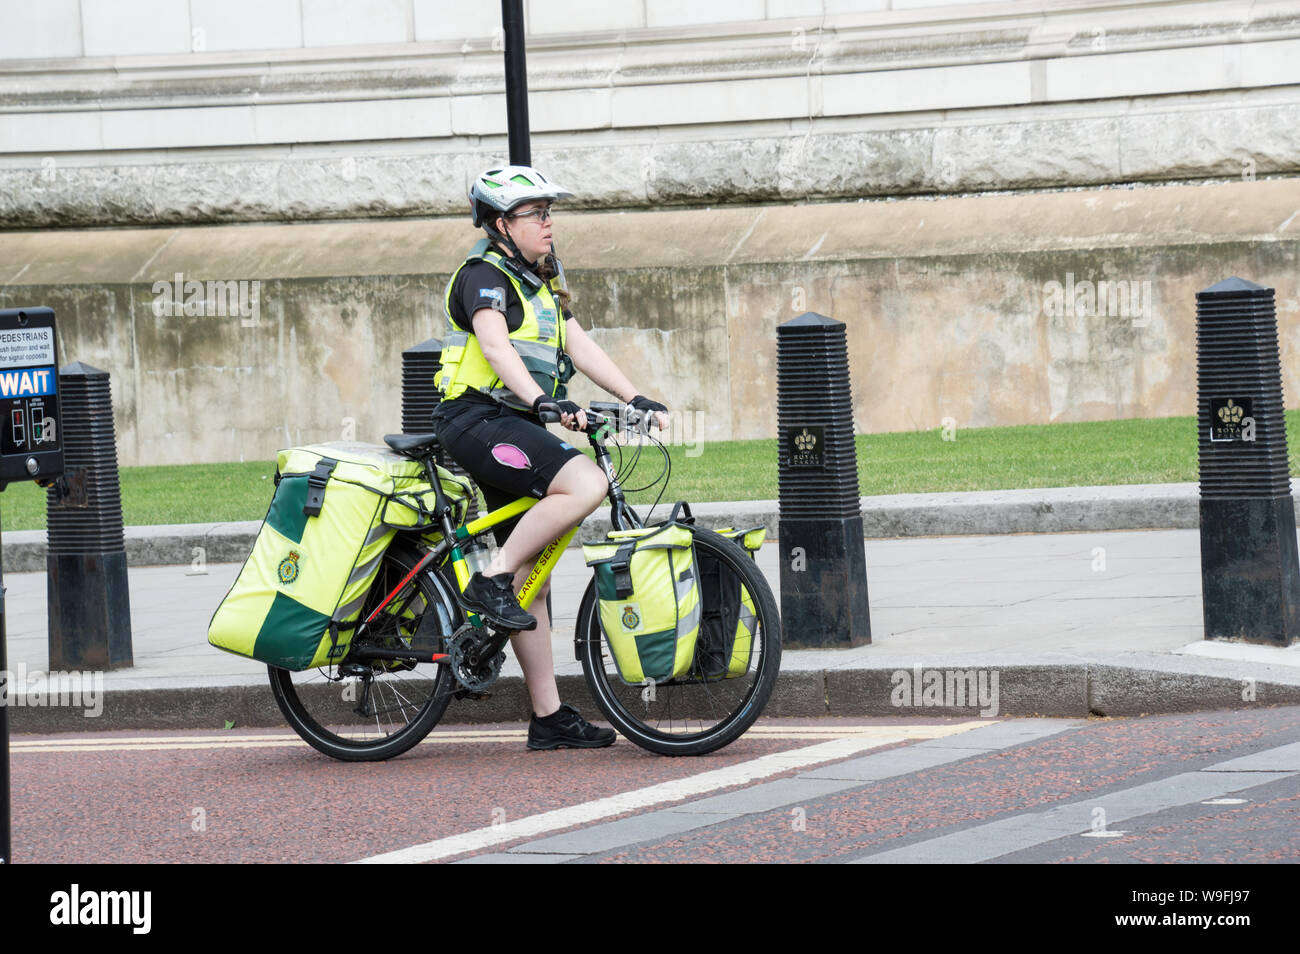 Sanitäter im Fahrrad / Fahrrad in London Signal warten auf Signal grün zu  drehen Stockfotografie - Alamy